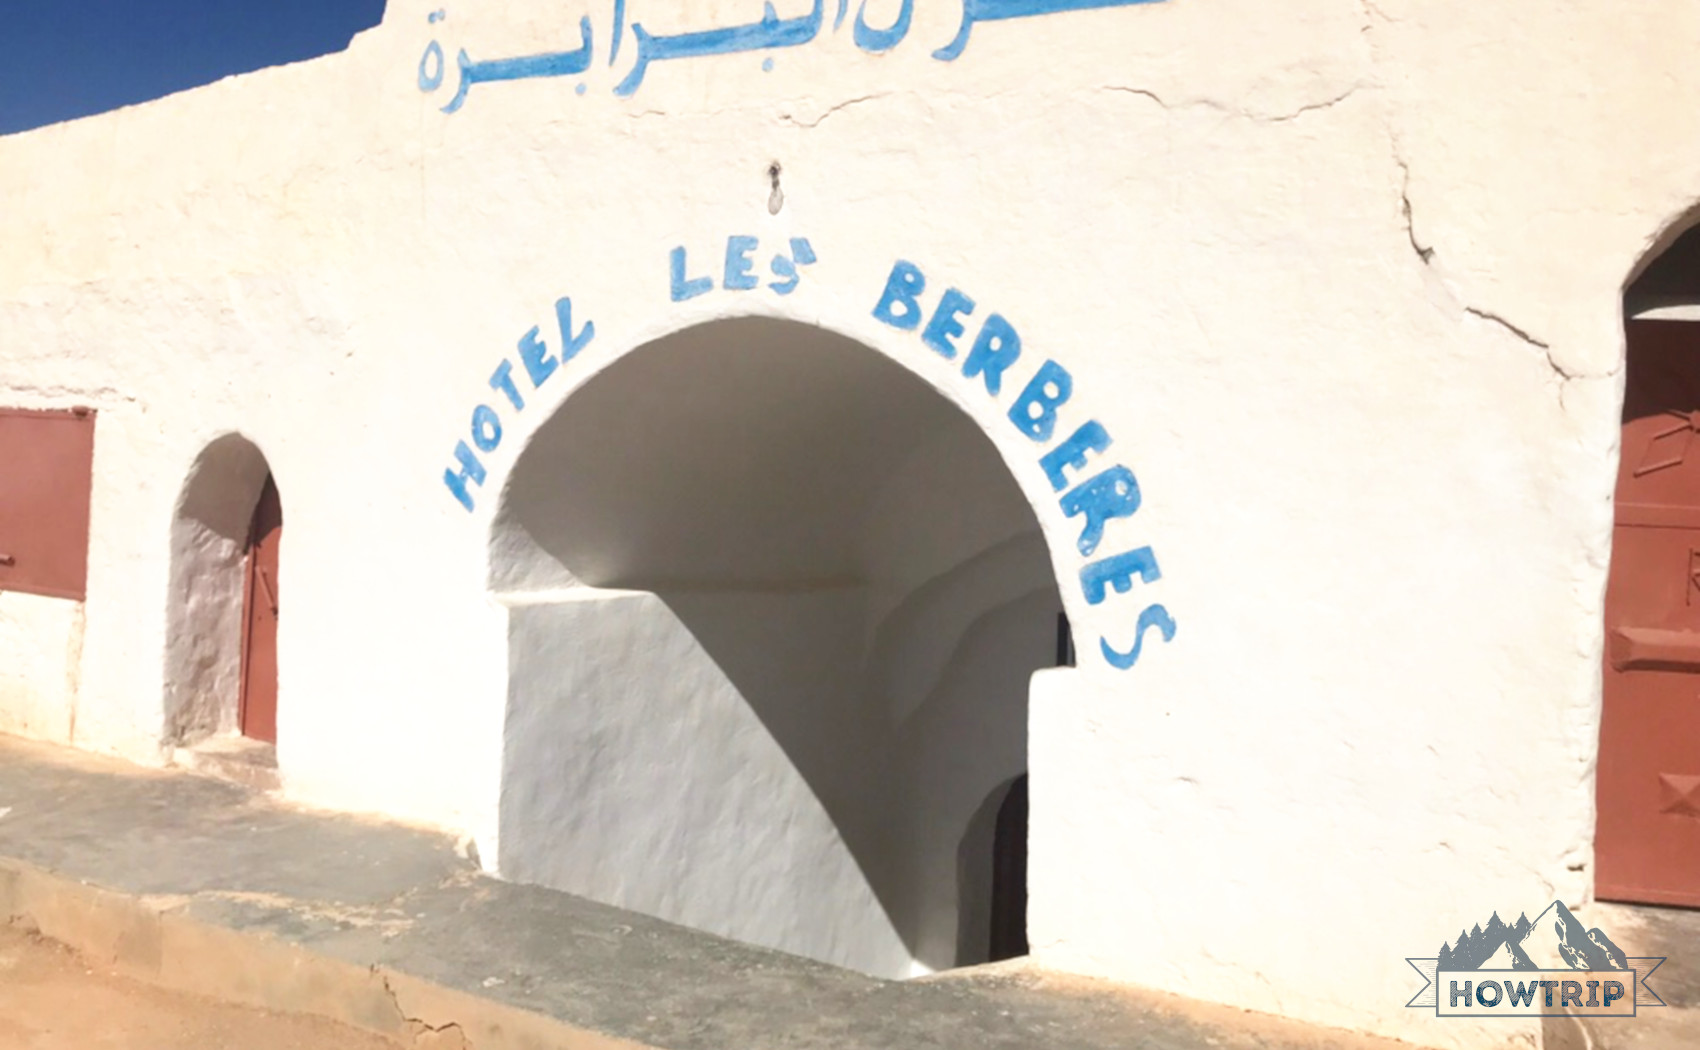 Отель в Тунисе